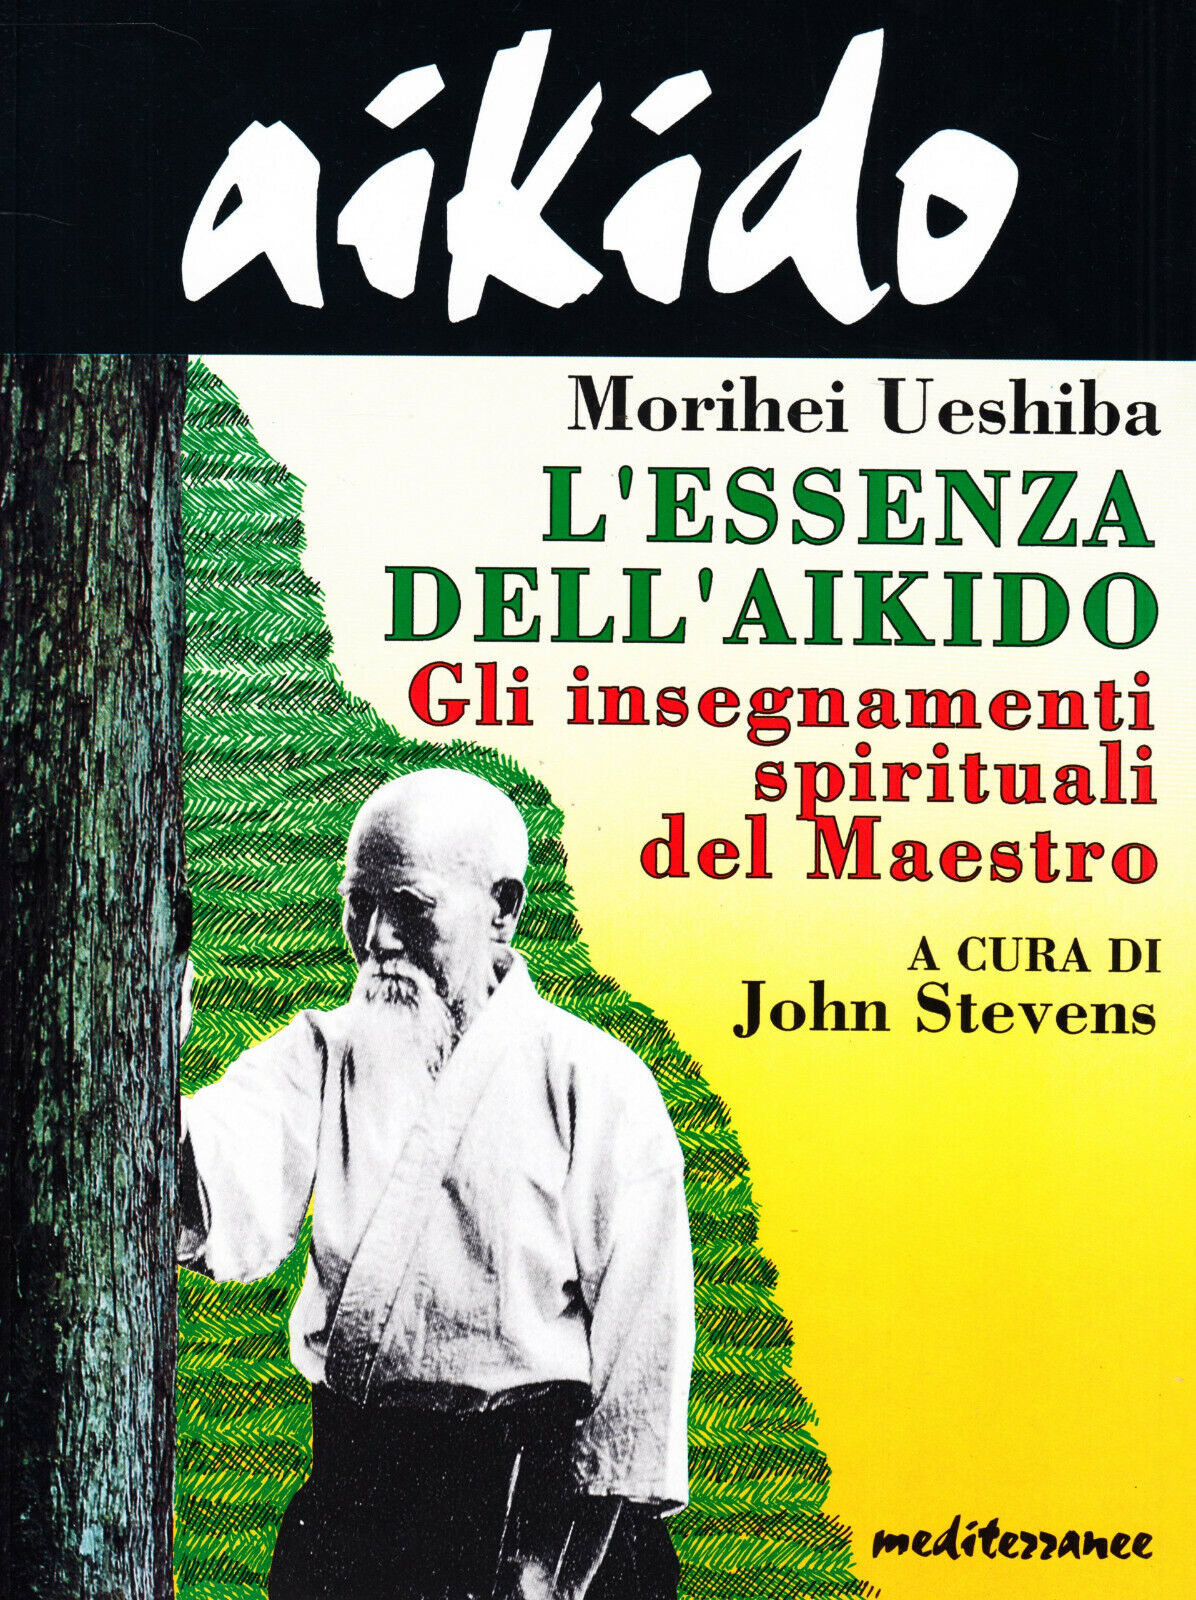 Aikido. L'essenza dell'aikido - Morihei Ueshiba - Mediterranee, 1995 libro usato